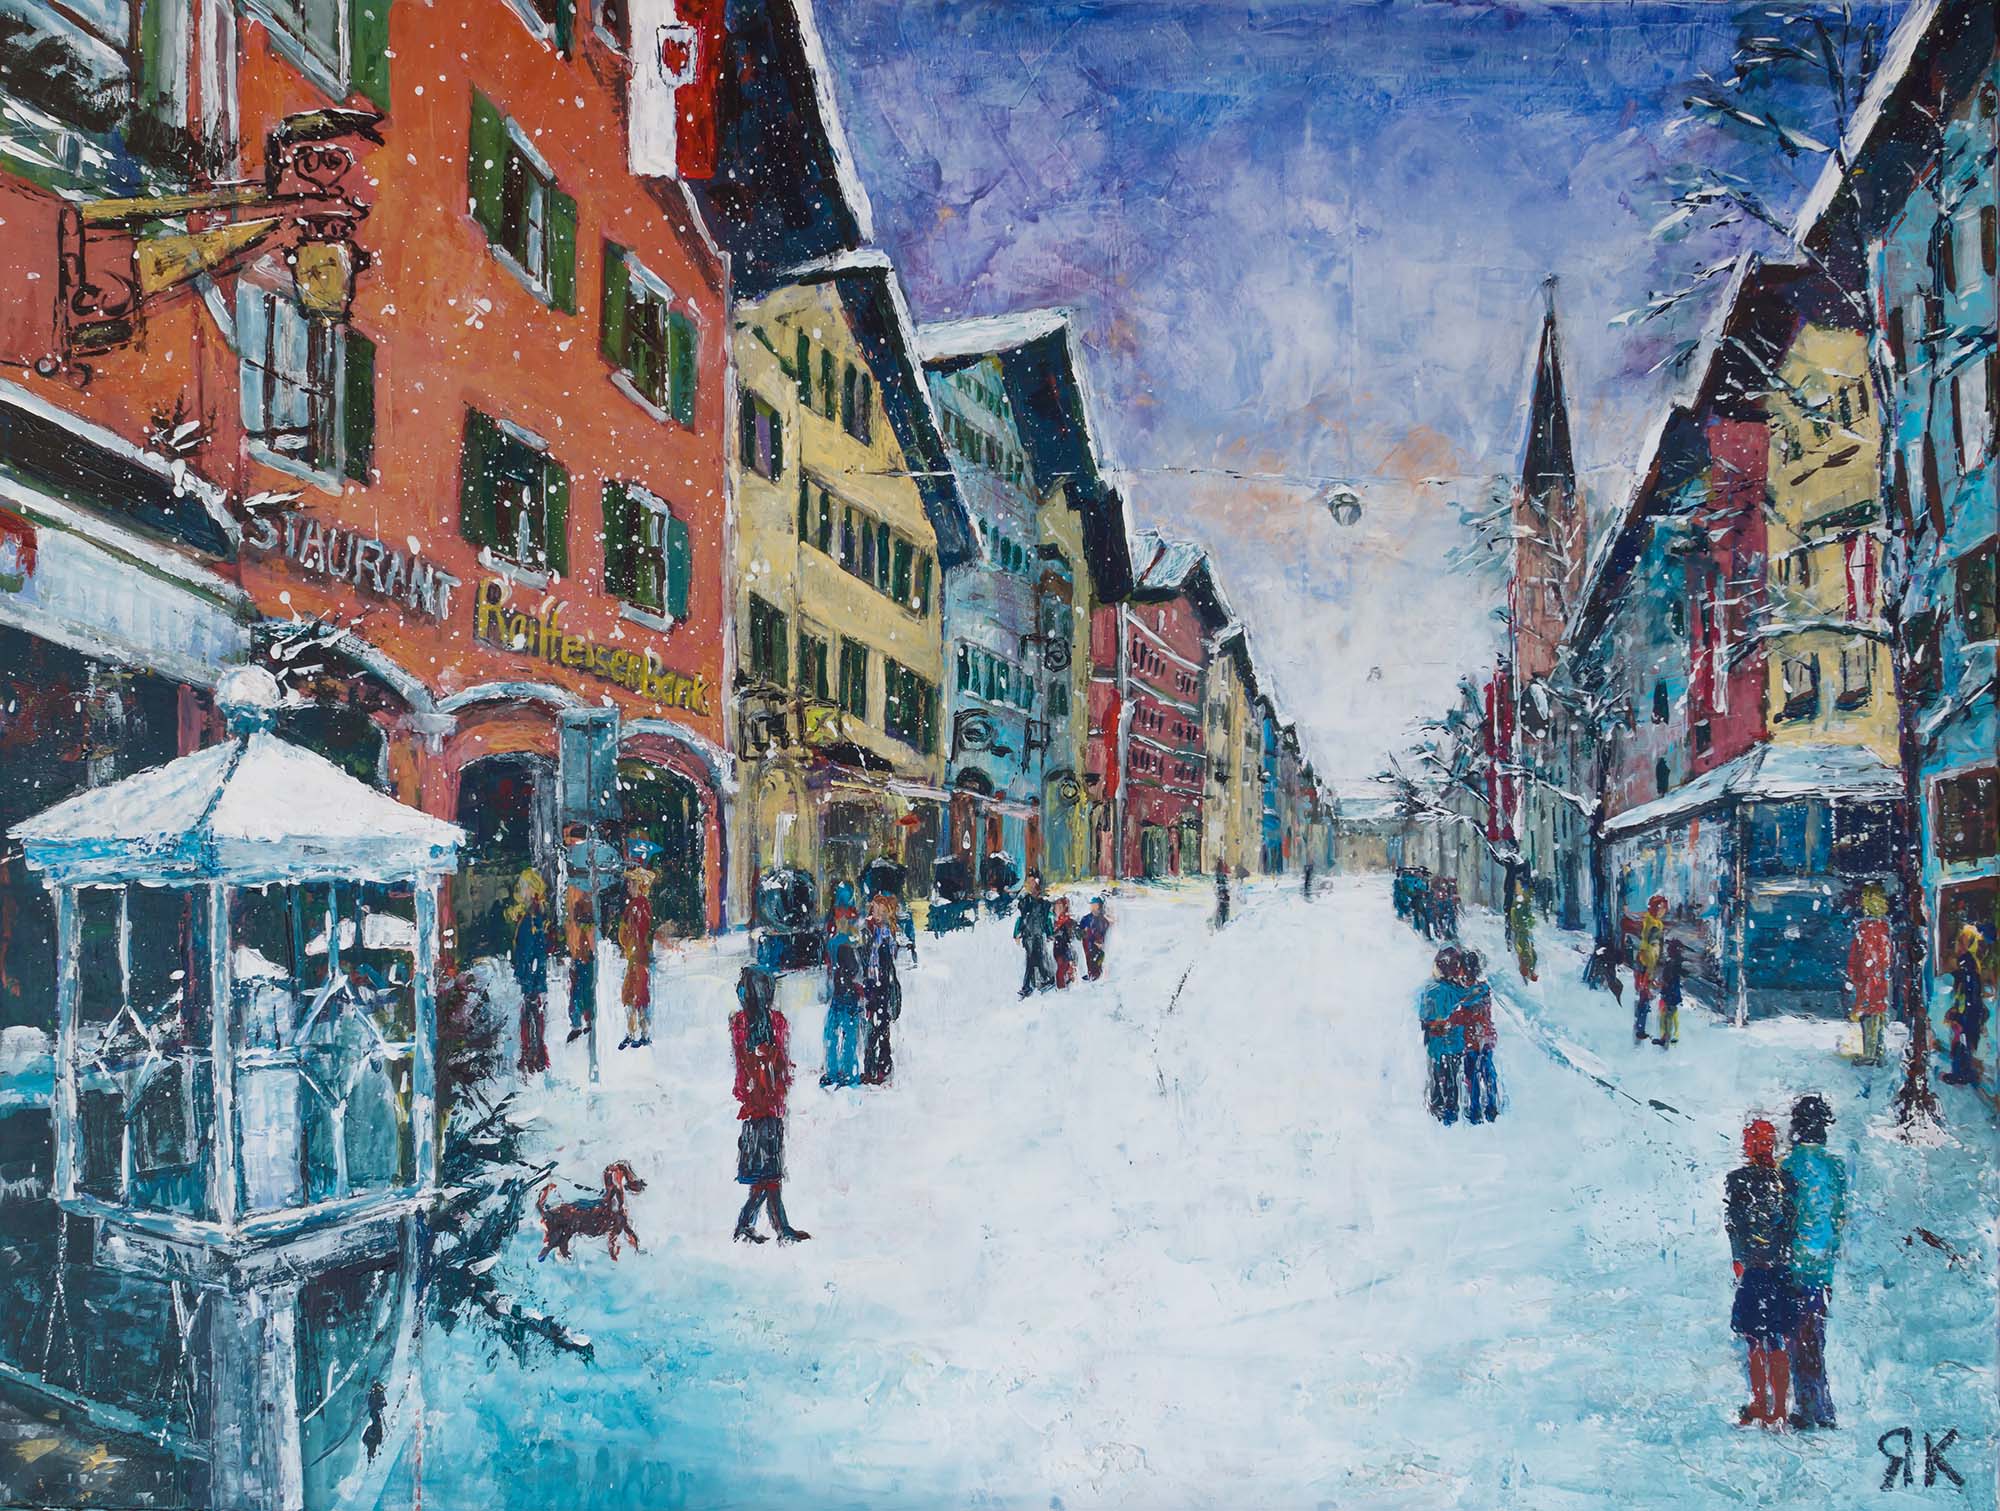 Kitzbühel winter scene in city street with church, Tyrol, Austria by Ria Kieboom